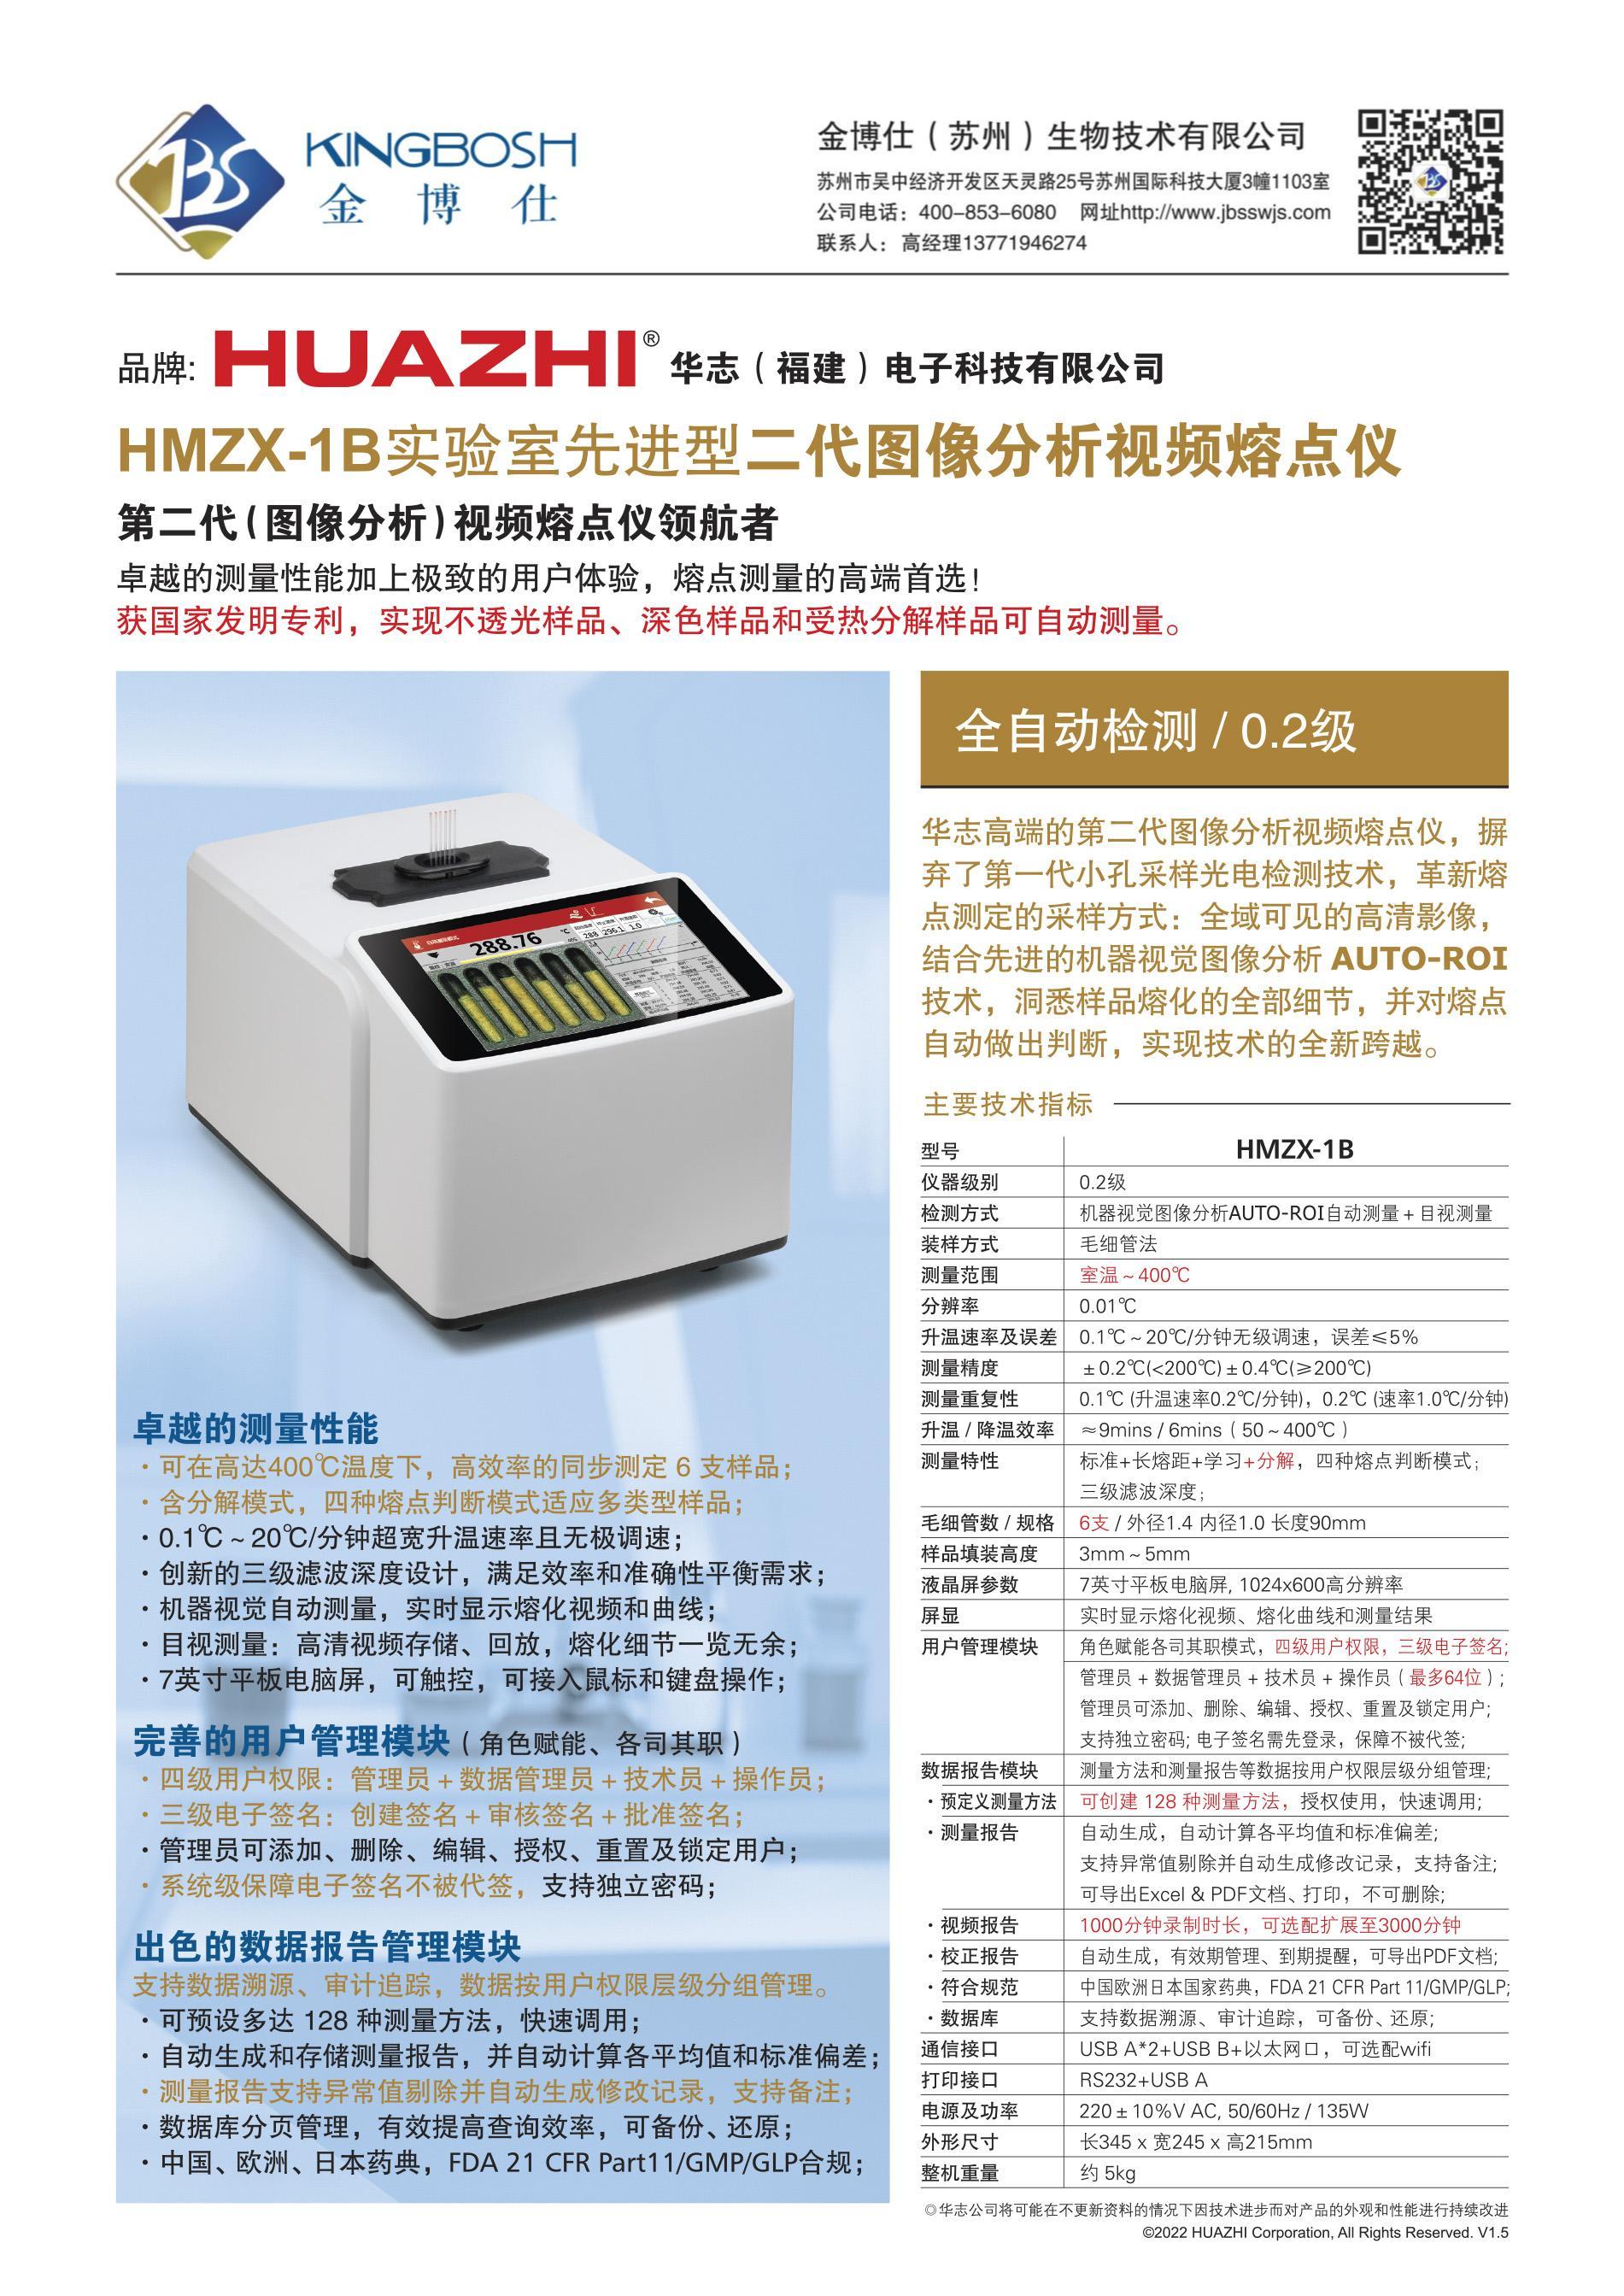 2,金博仕-HMZX-1B二代视频熔点仪单机详情.jpg